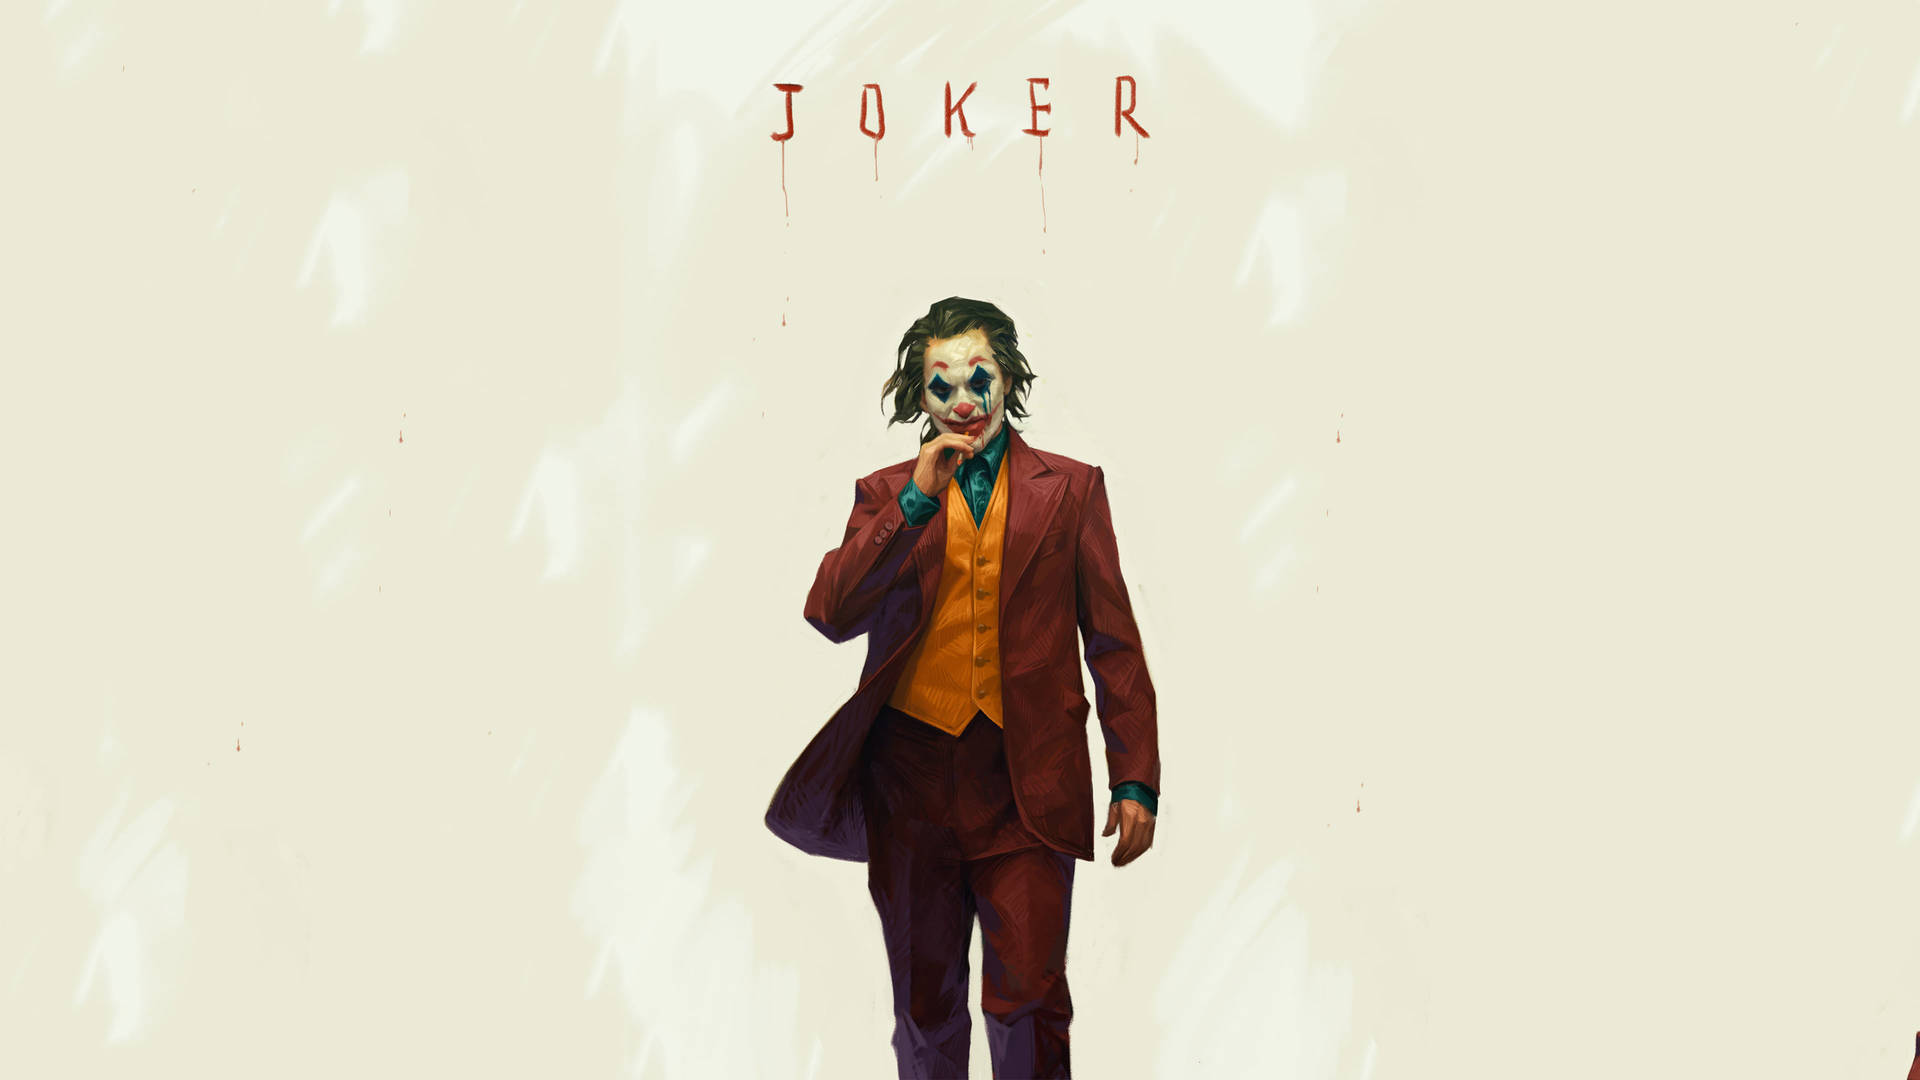 Joker 2019 Poster Art Background